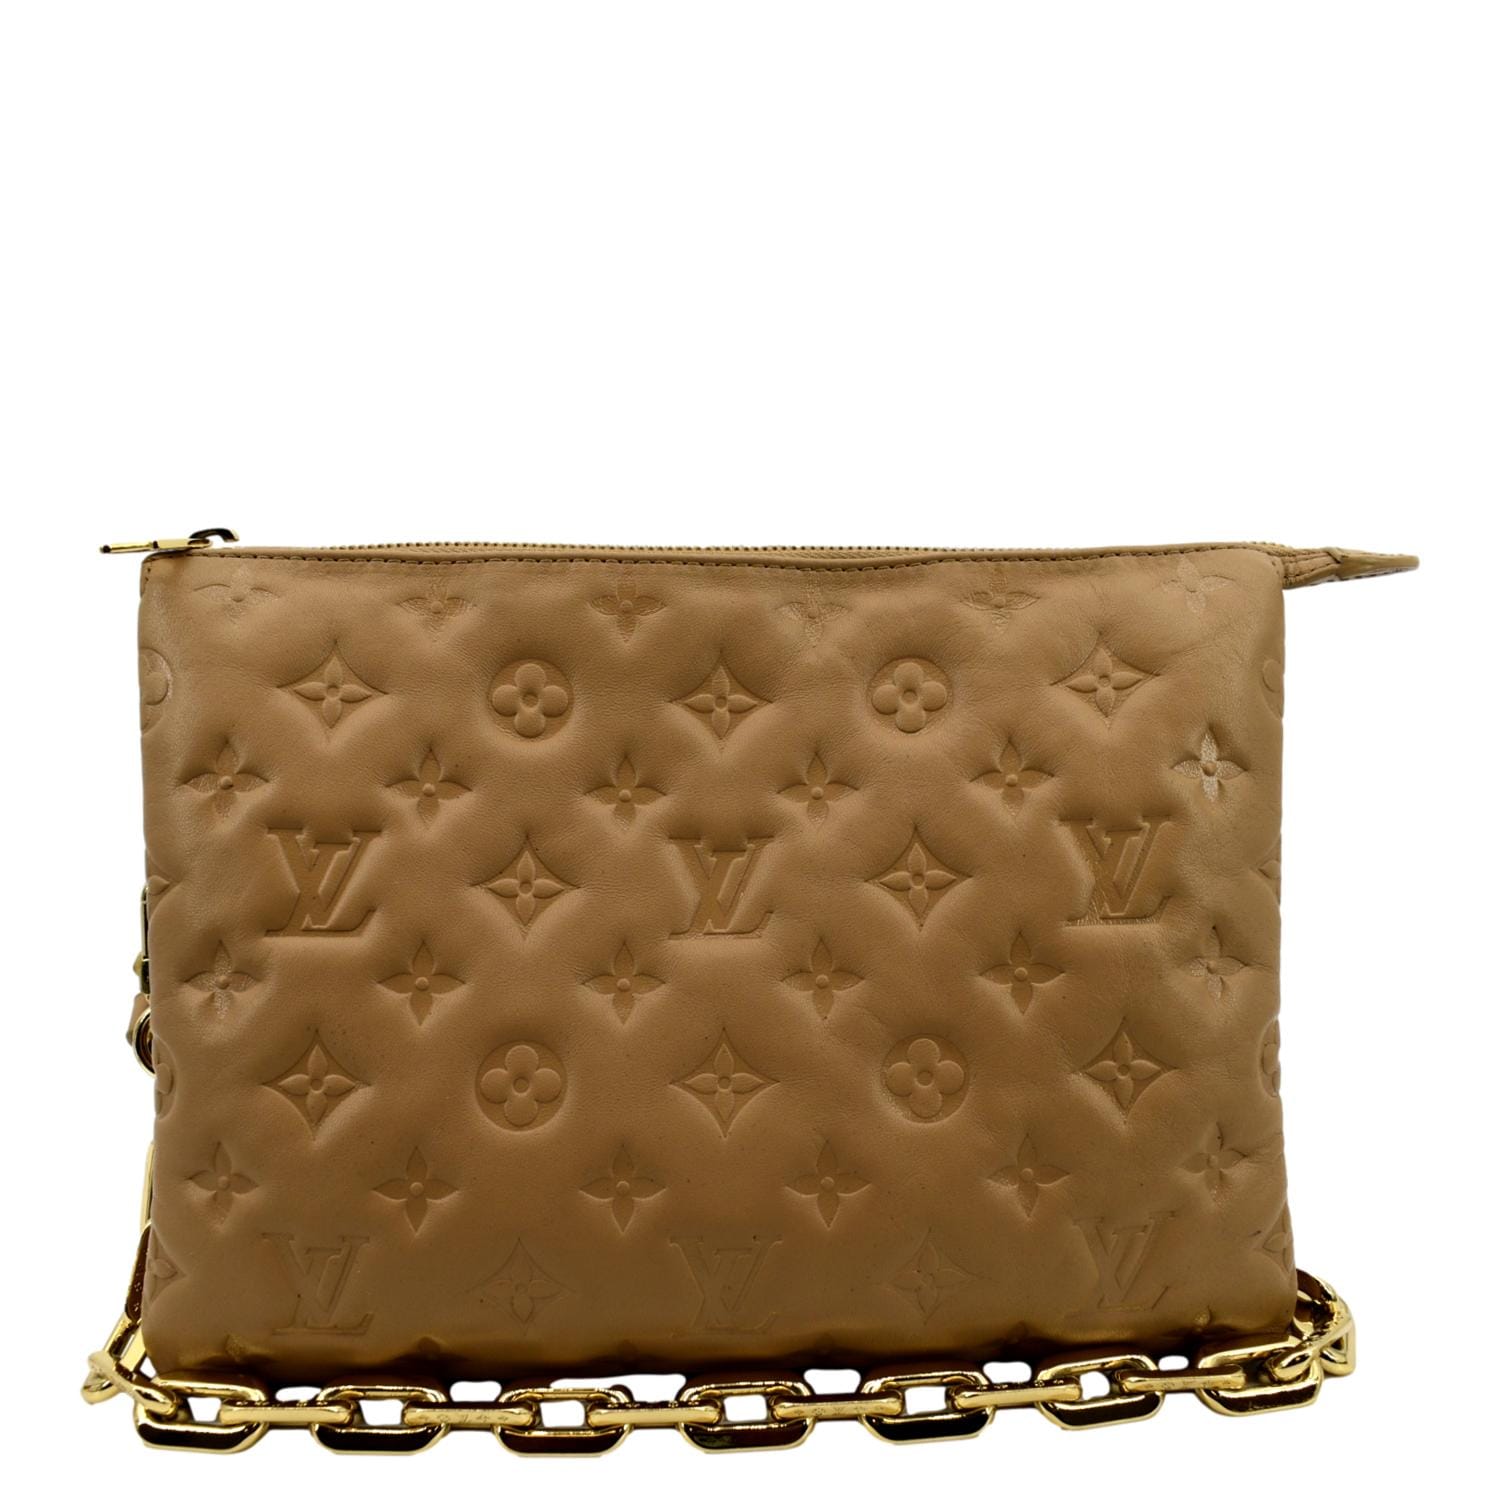 Louis Vuitton - Pochette Coussin - Camel - Leather - Women - Luxury